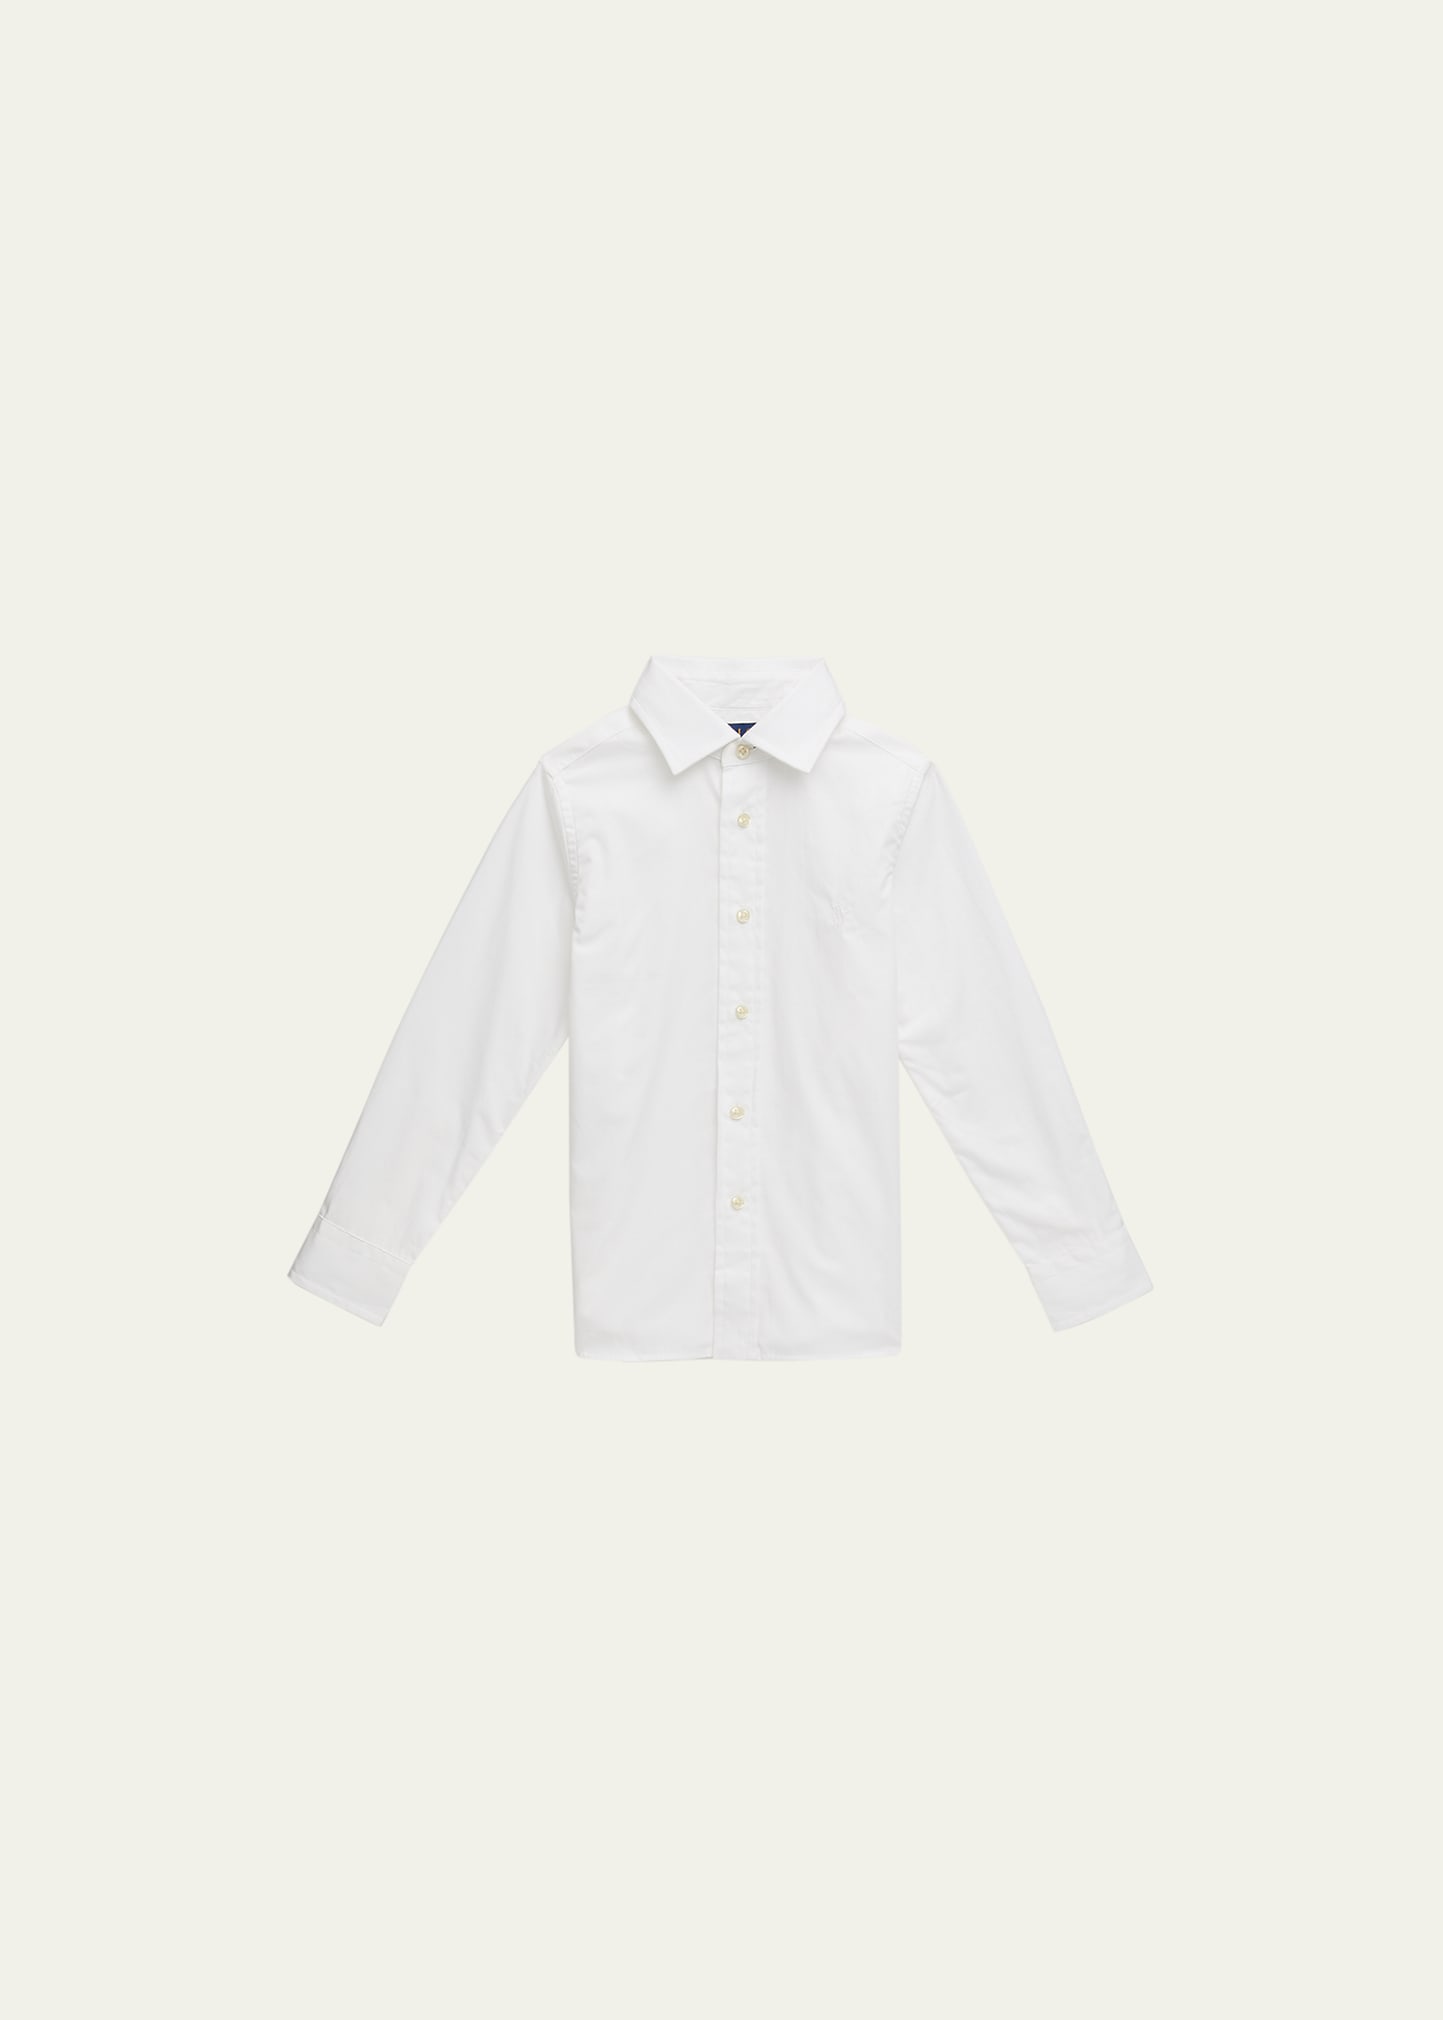 Ralph Lauren Kids' Boy's Poplin Embroidered Dress Shirt In White